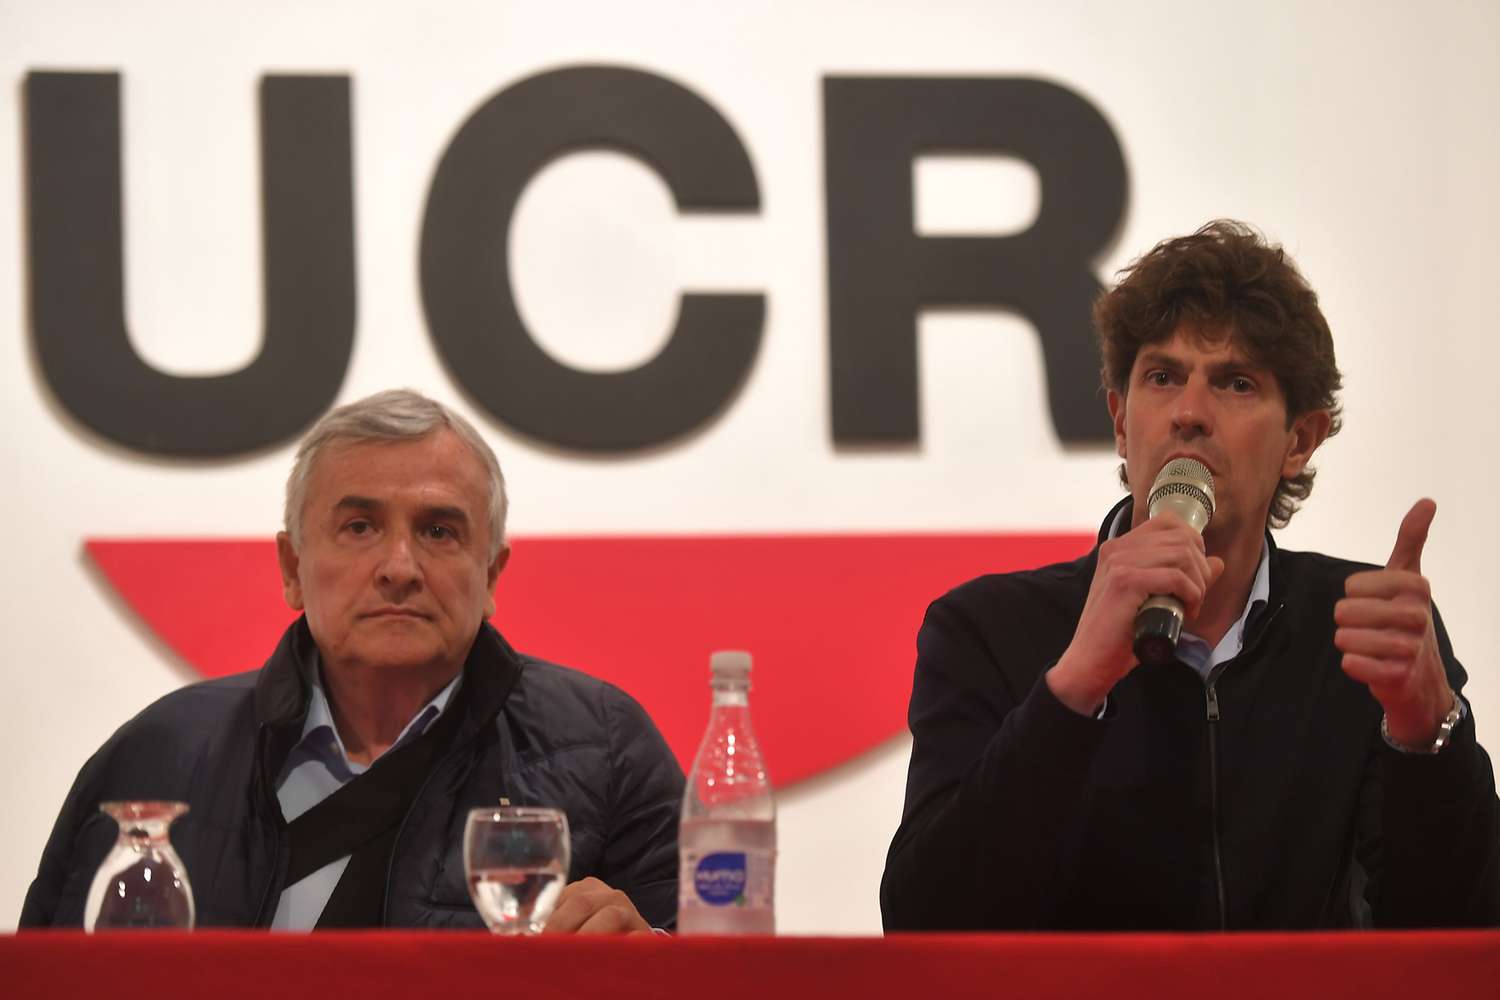 La UCR "no acompañará" a ningún candidato en el balotaje y descalificó a Bullrich y Macri